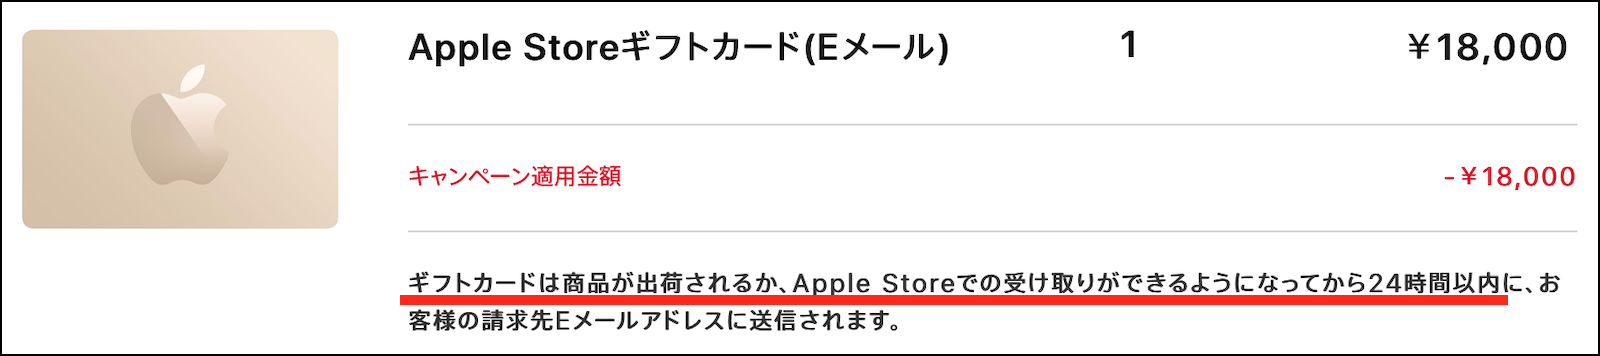 Apple Storeギフトカード(E… - Apple コミュニティ